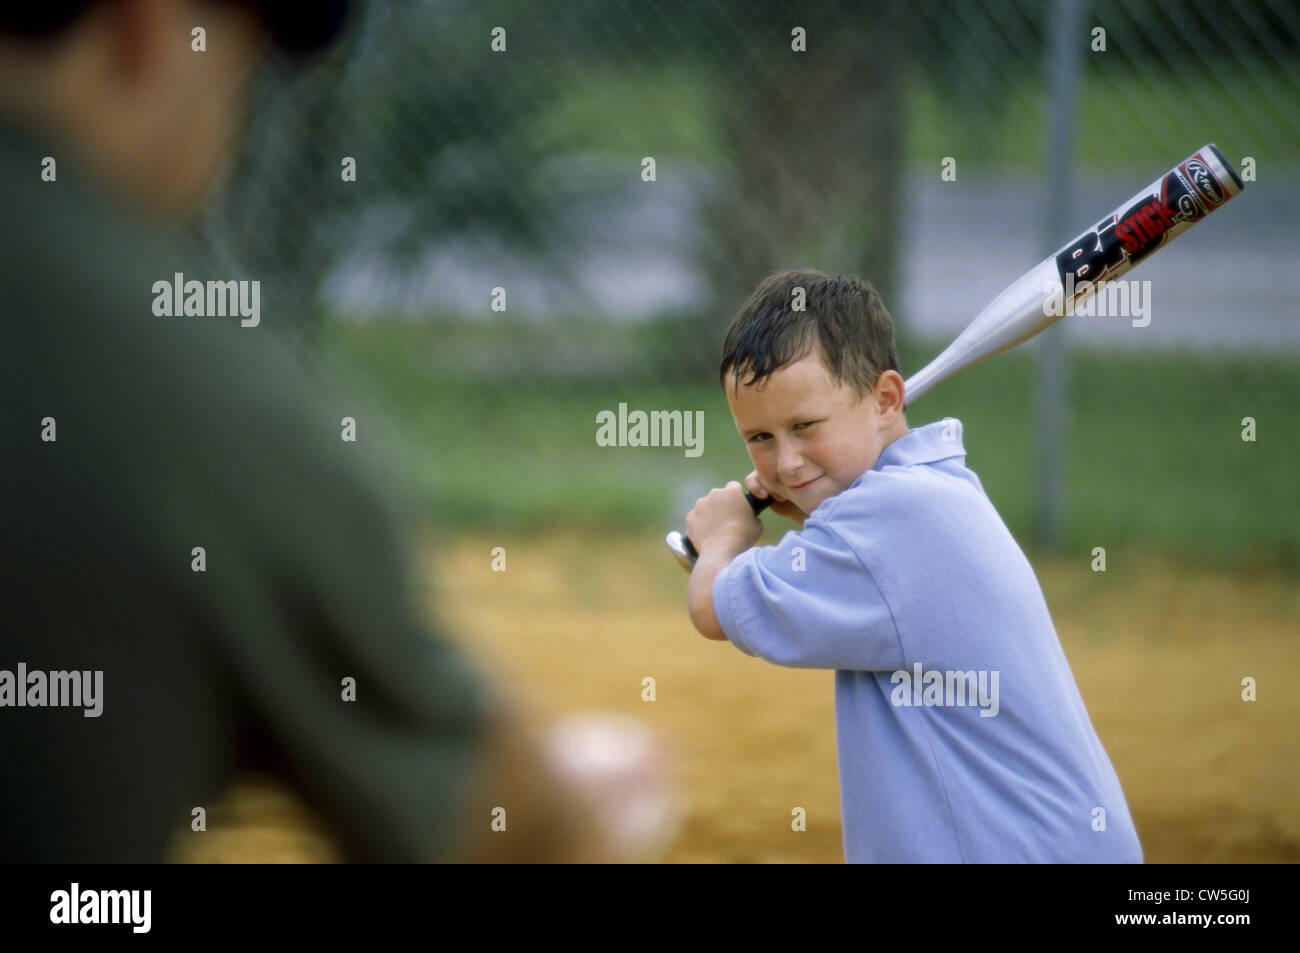 Boy playing baseball Stock Photo